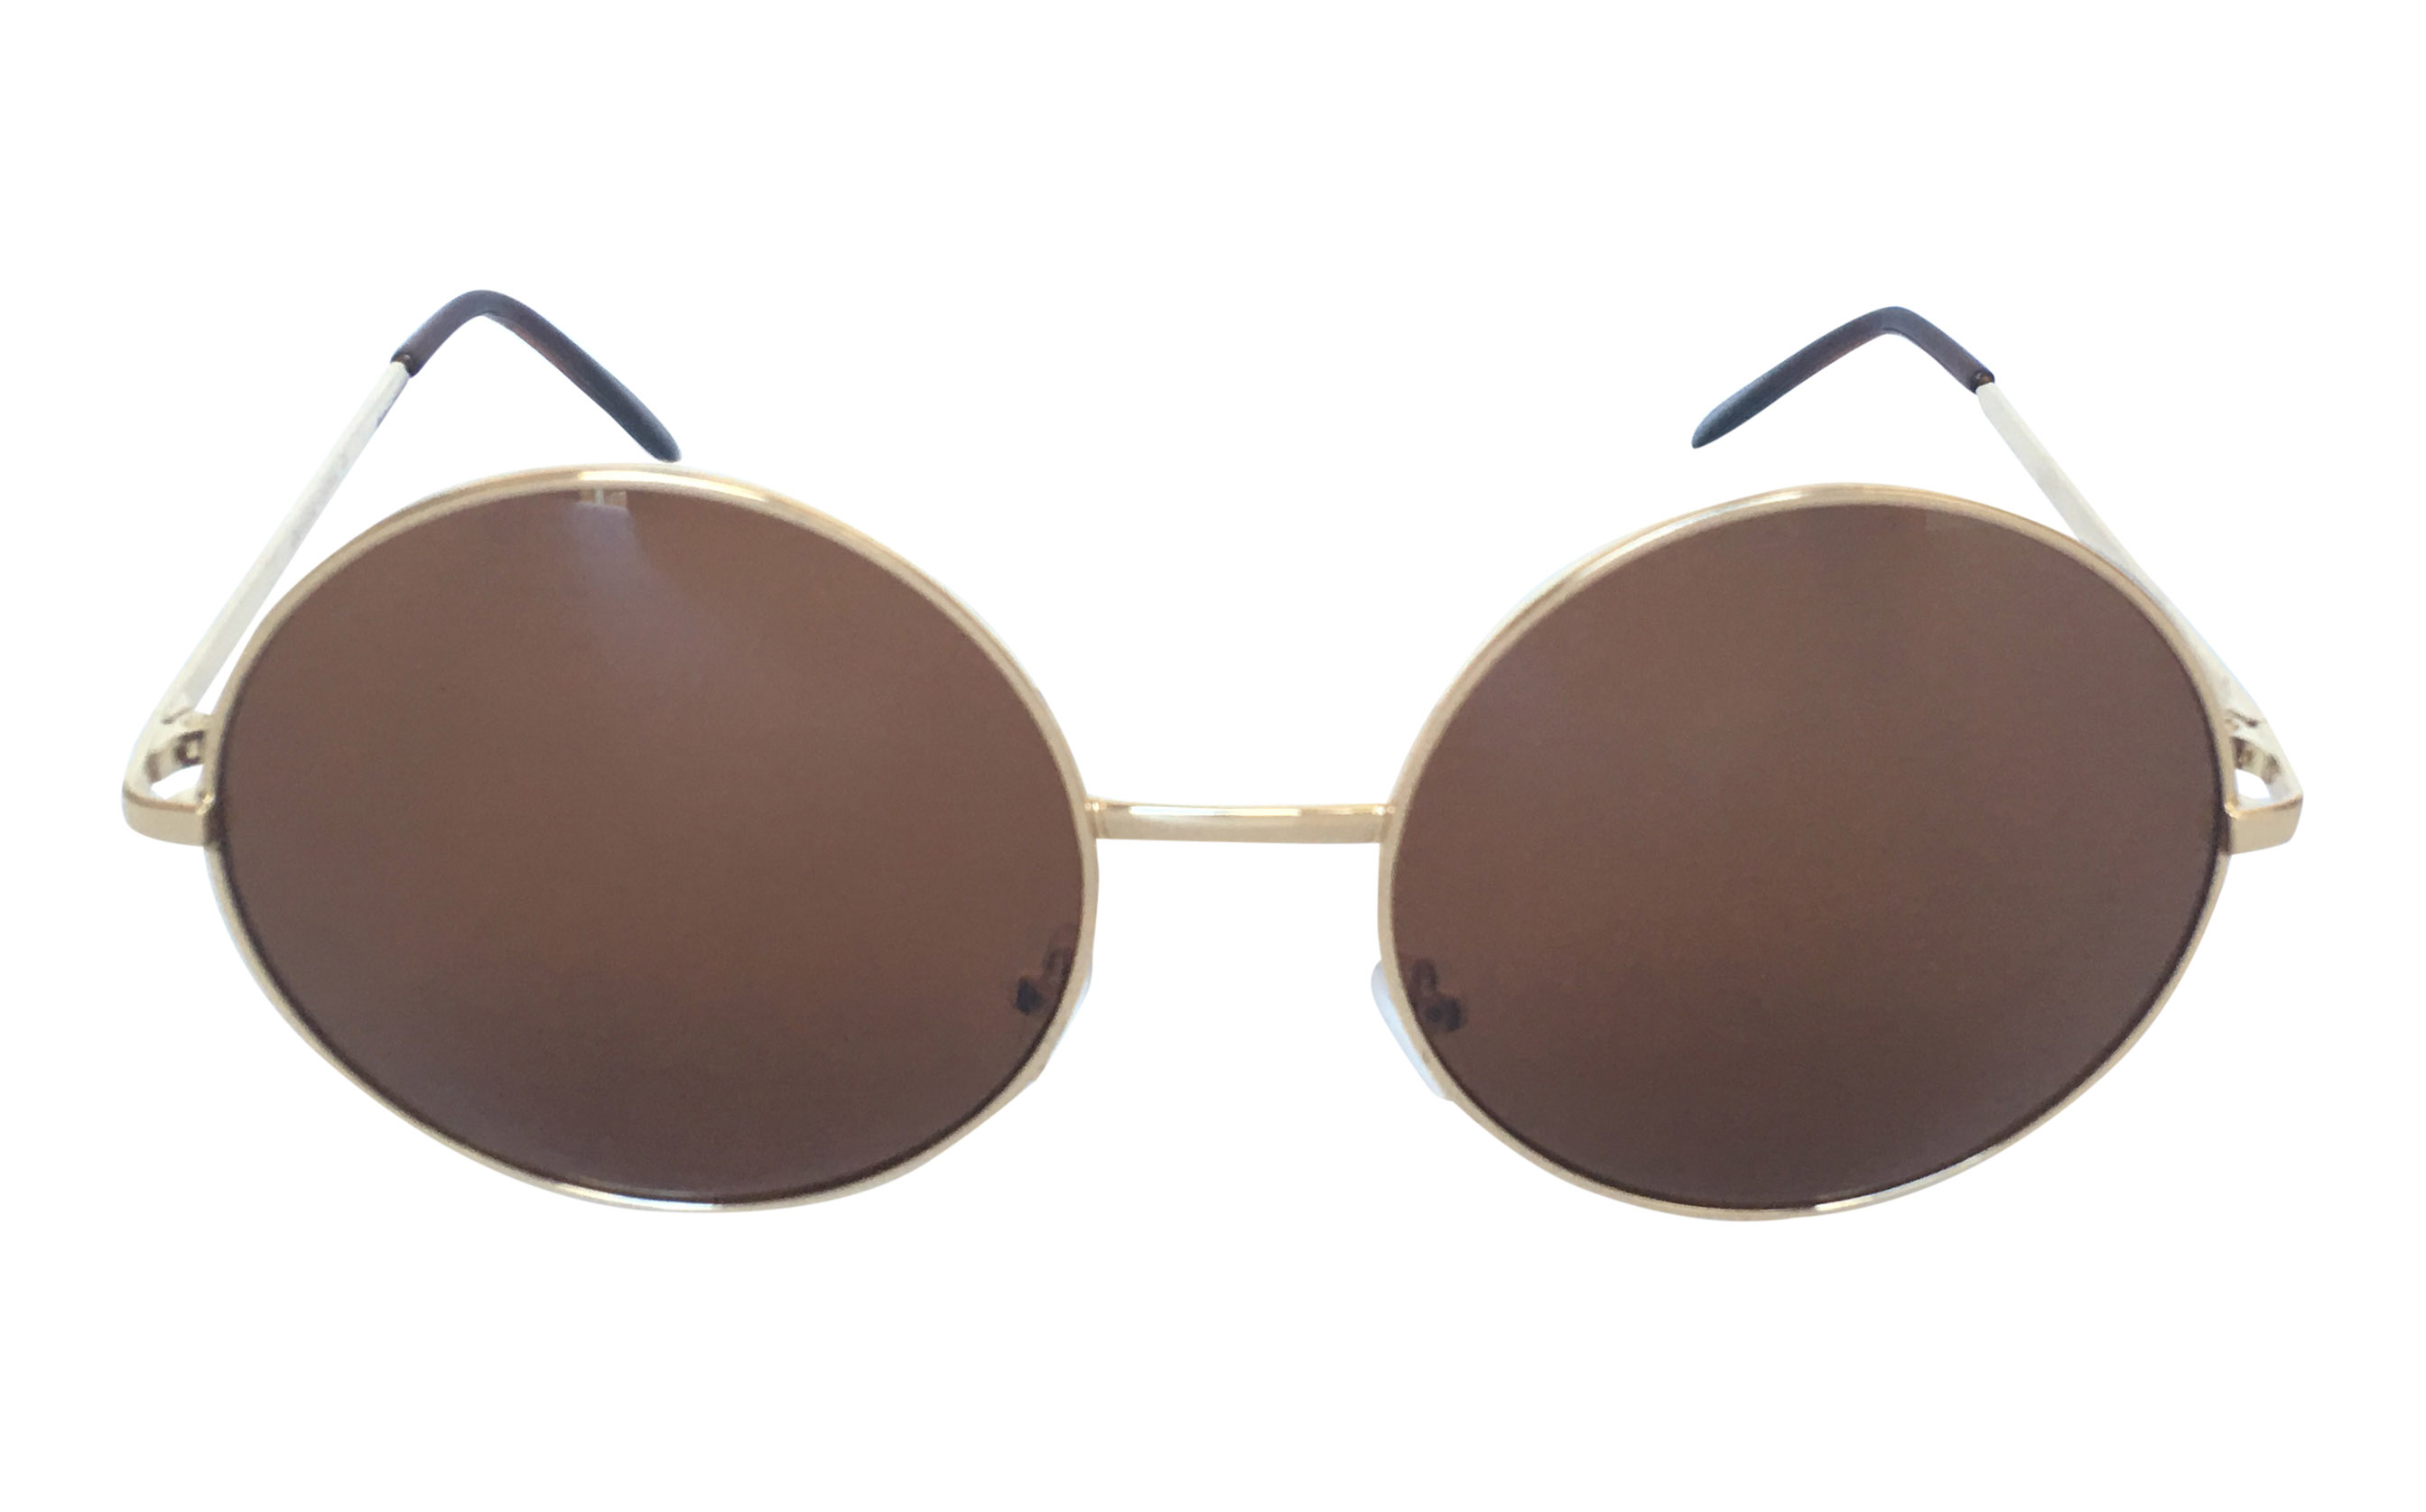 Stor guldfarvet rund solbrille med brune linser - Design nr. s3305